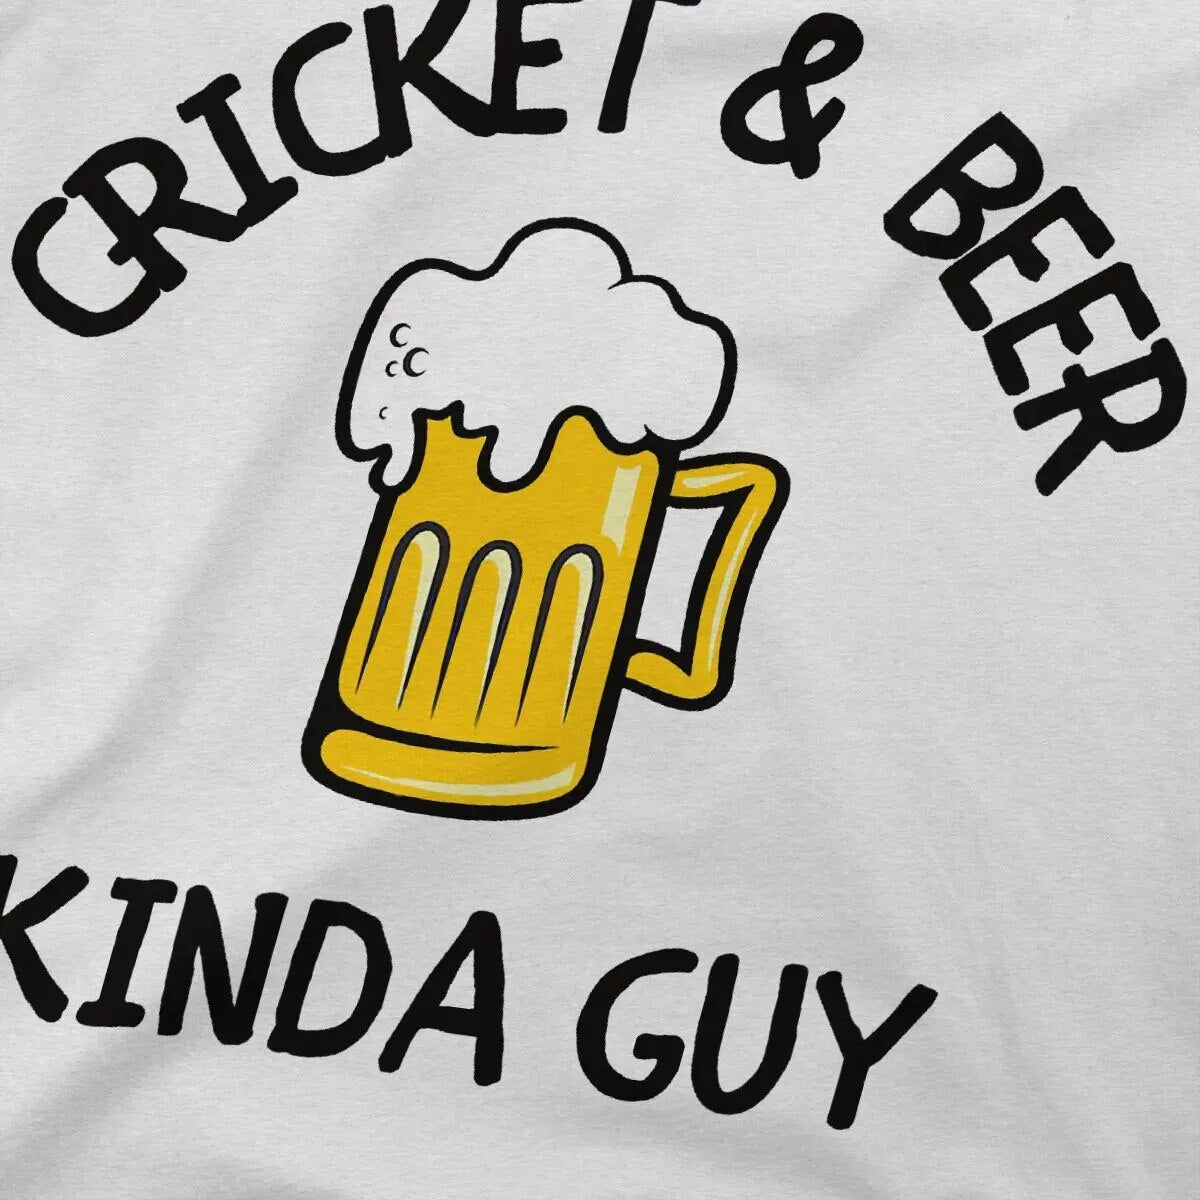 Cricket & Beer Kinda Guy T-Shirt for Men White